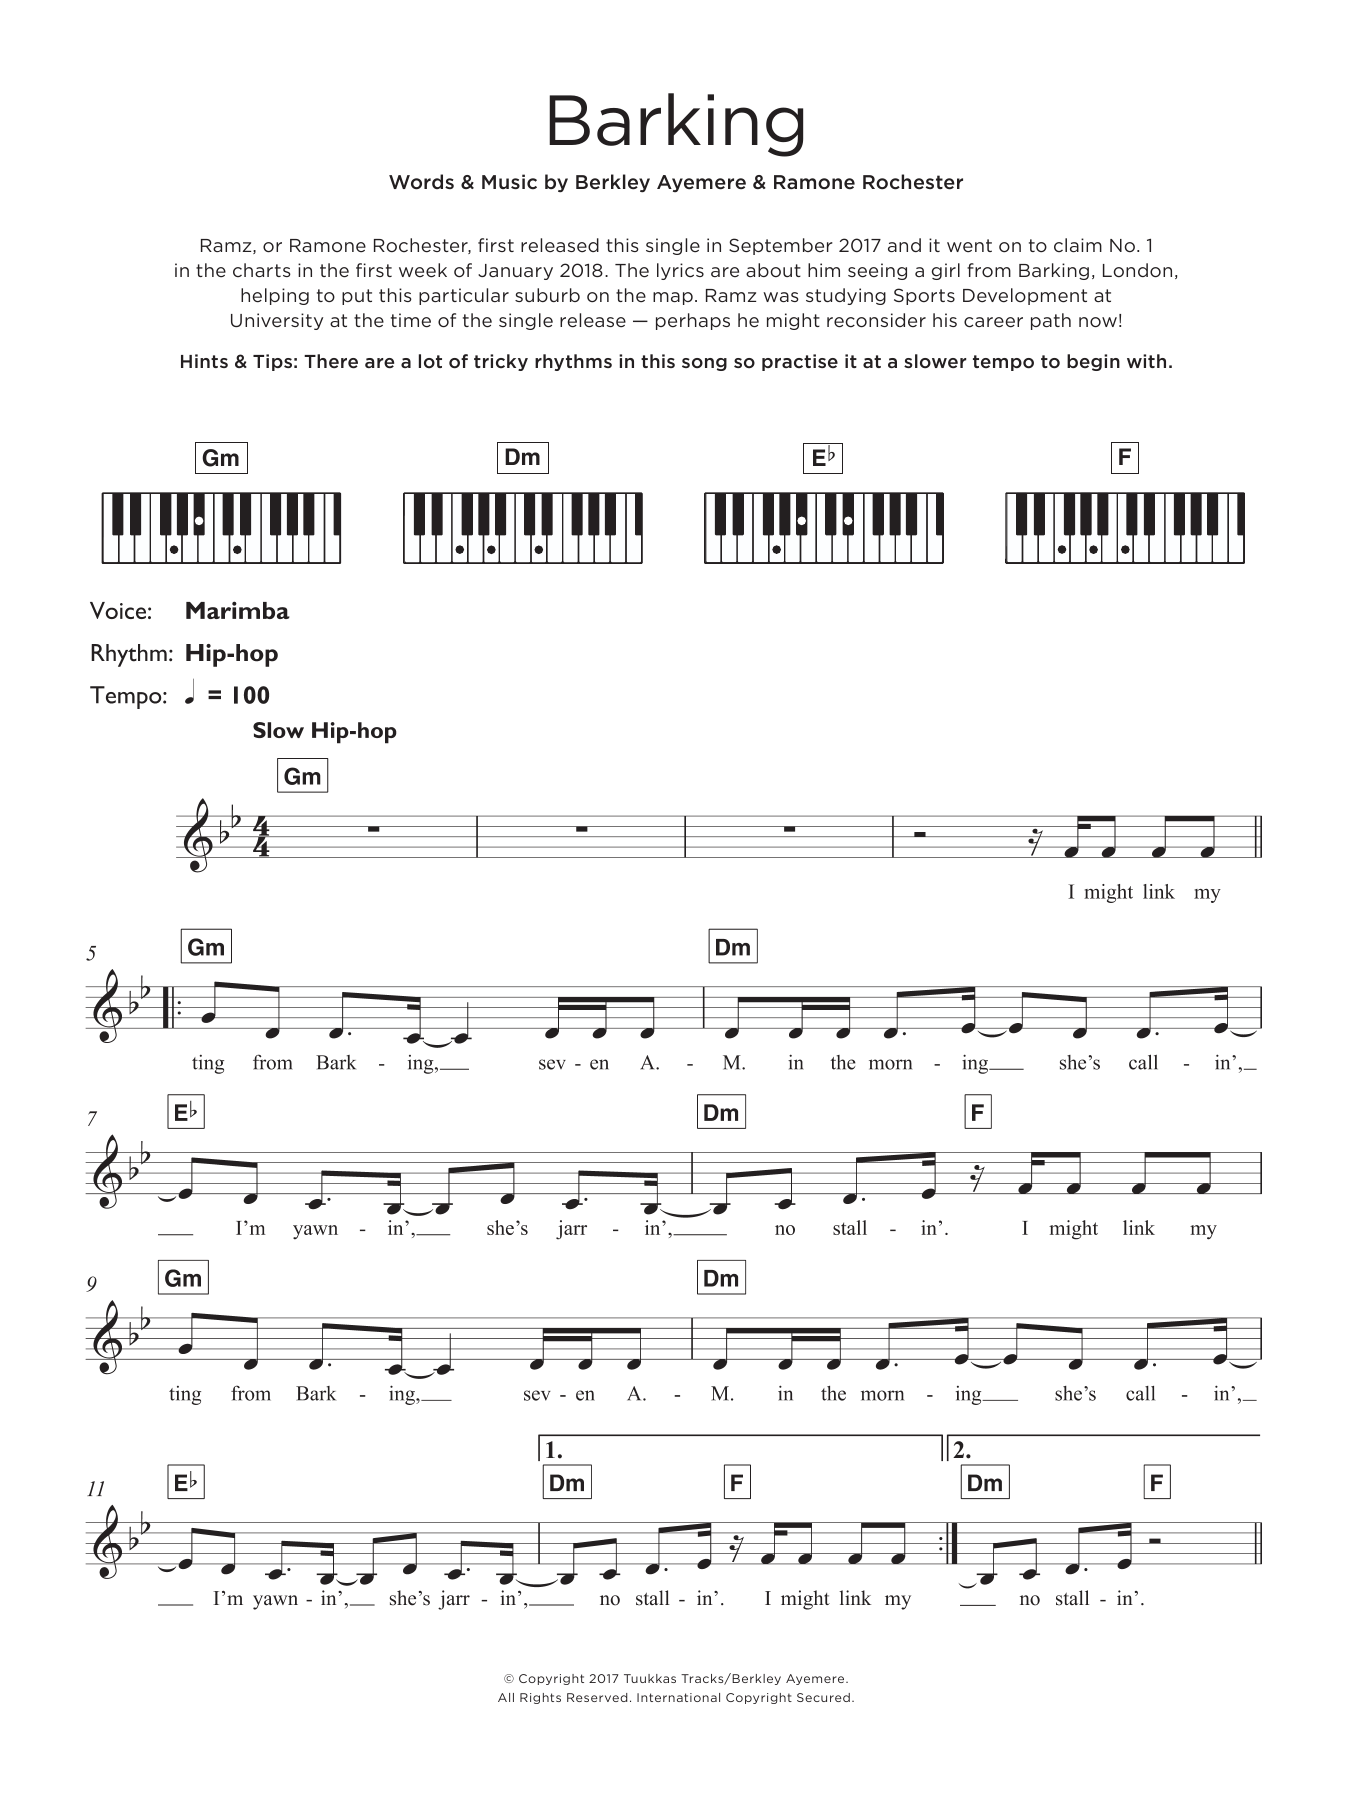 Ramz Barking Sheet Music Notes & Chords for Keyboard - Download or Print PDF